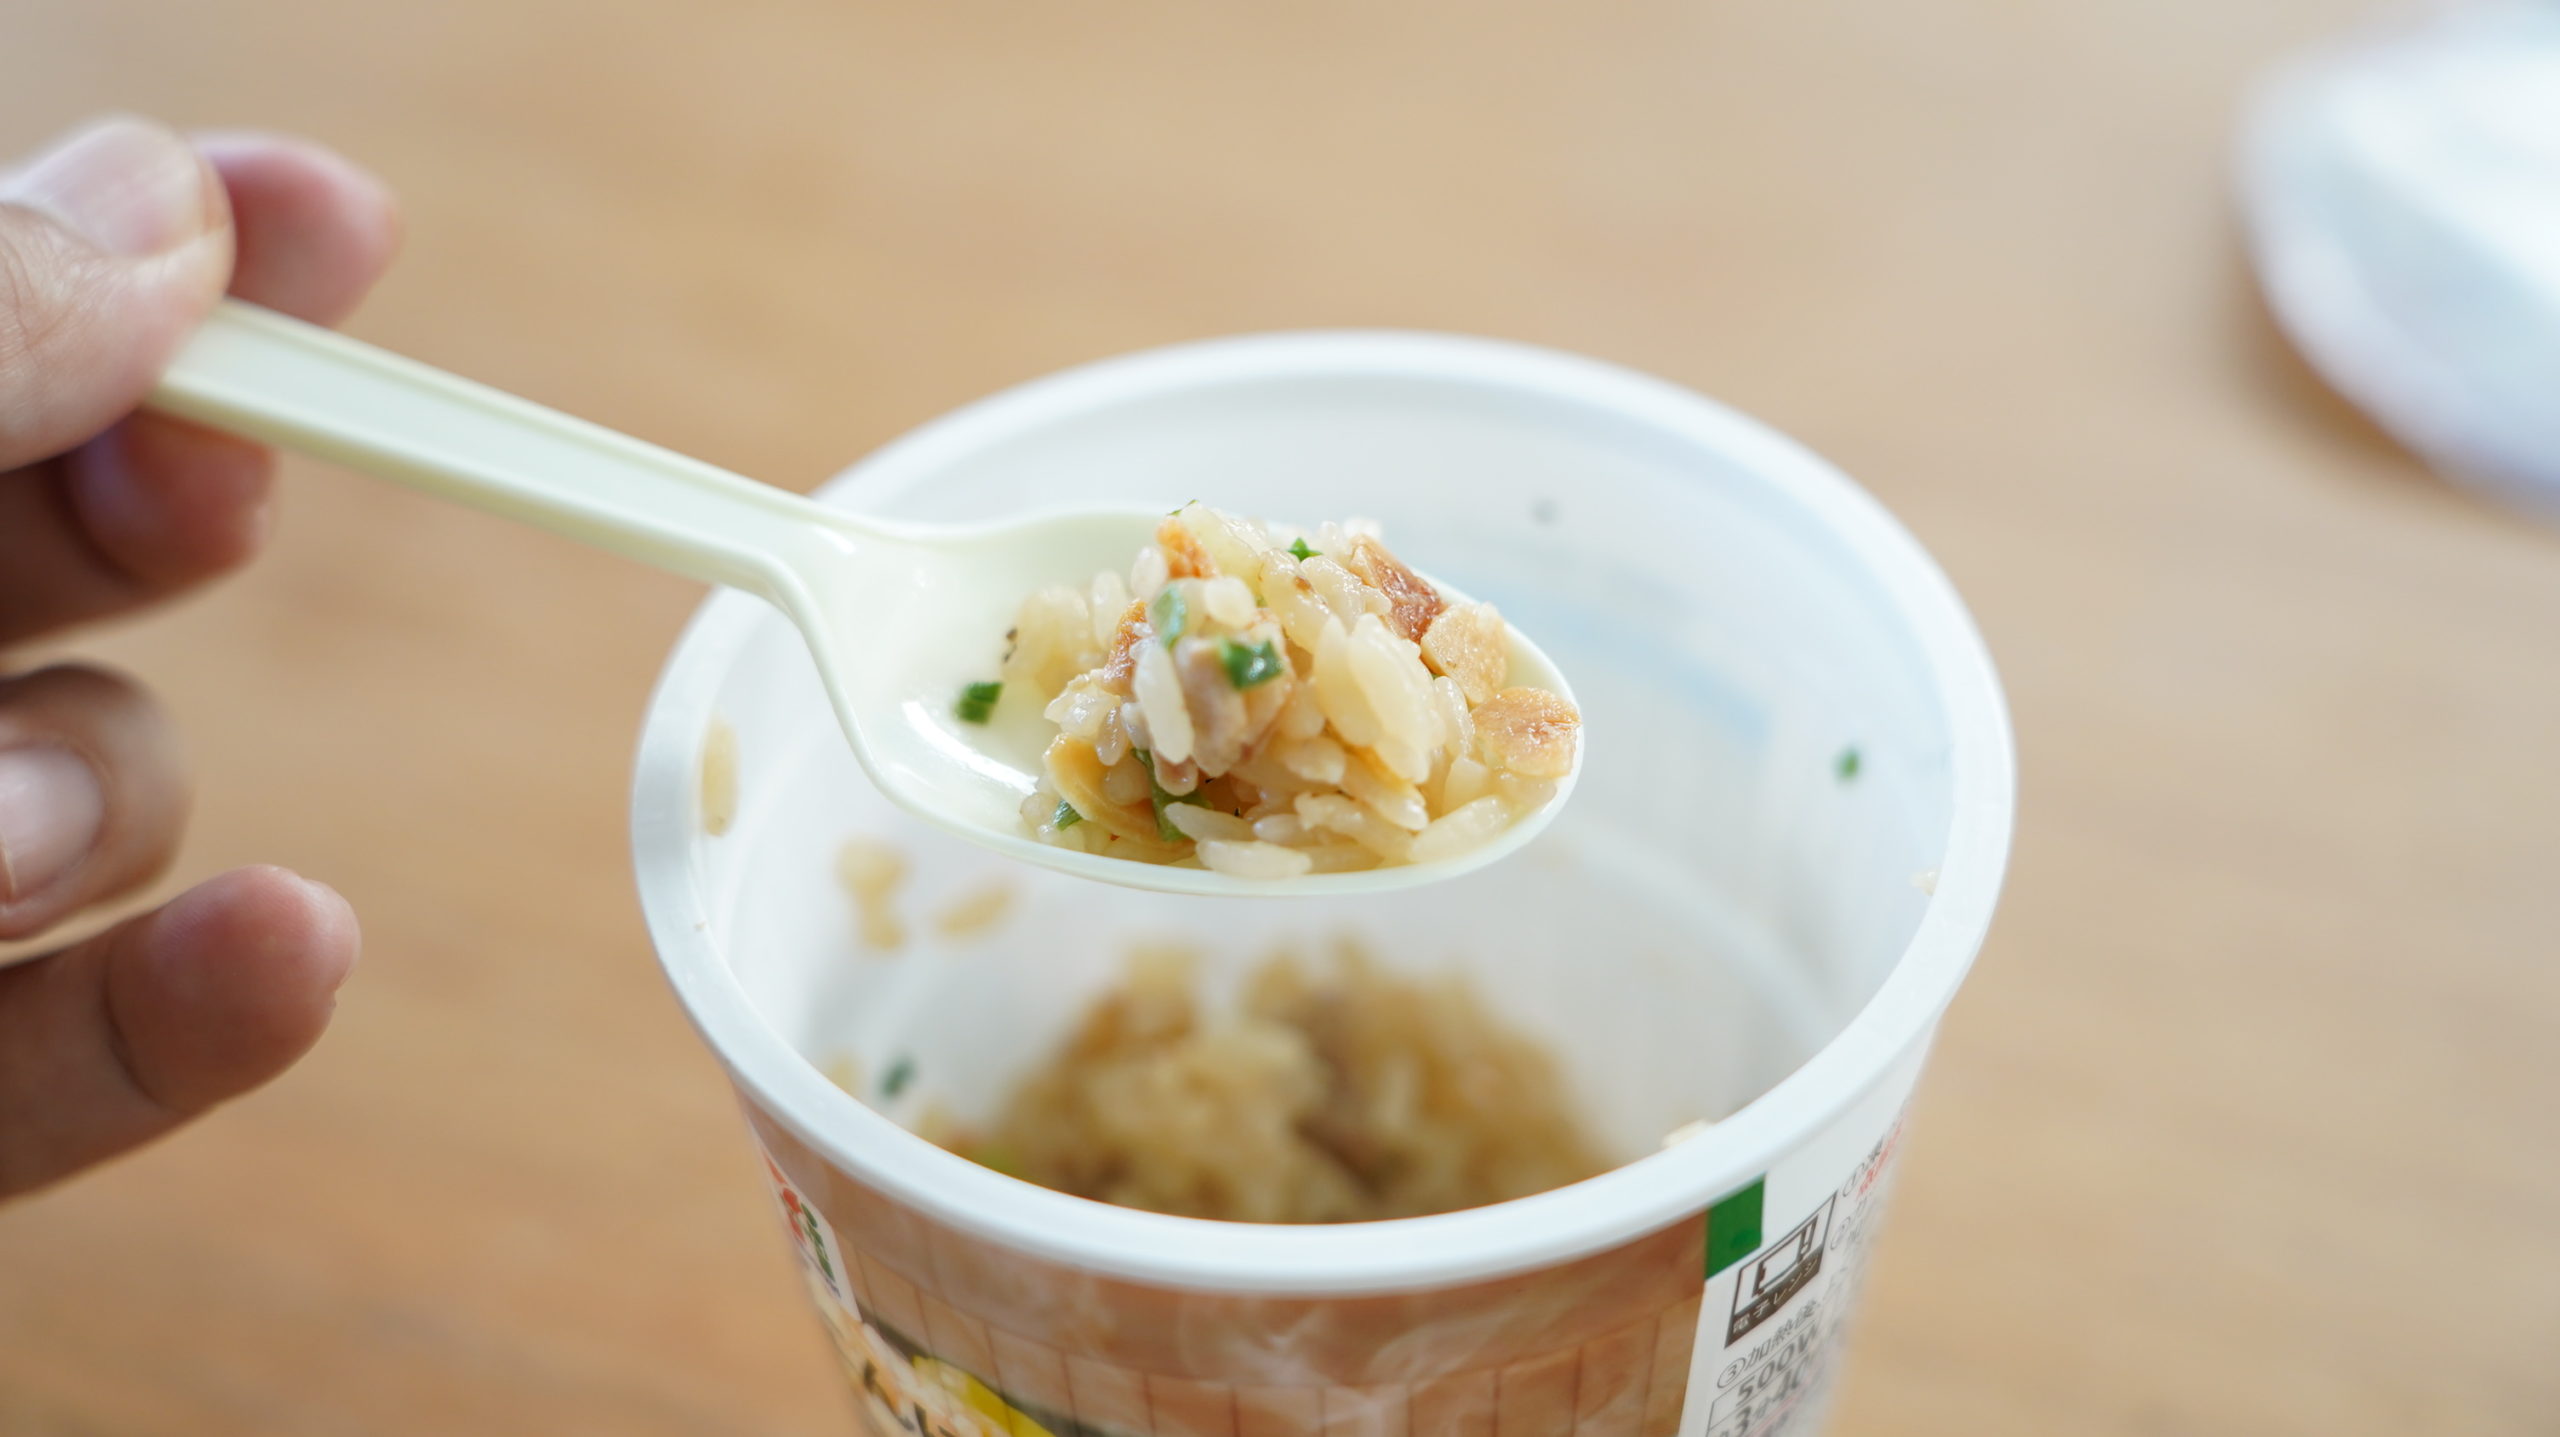 セブンイレブンの冷凍食品「禁断にんにくスタミナ飯」をスプーンで救った写真